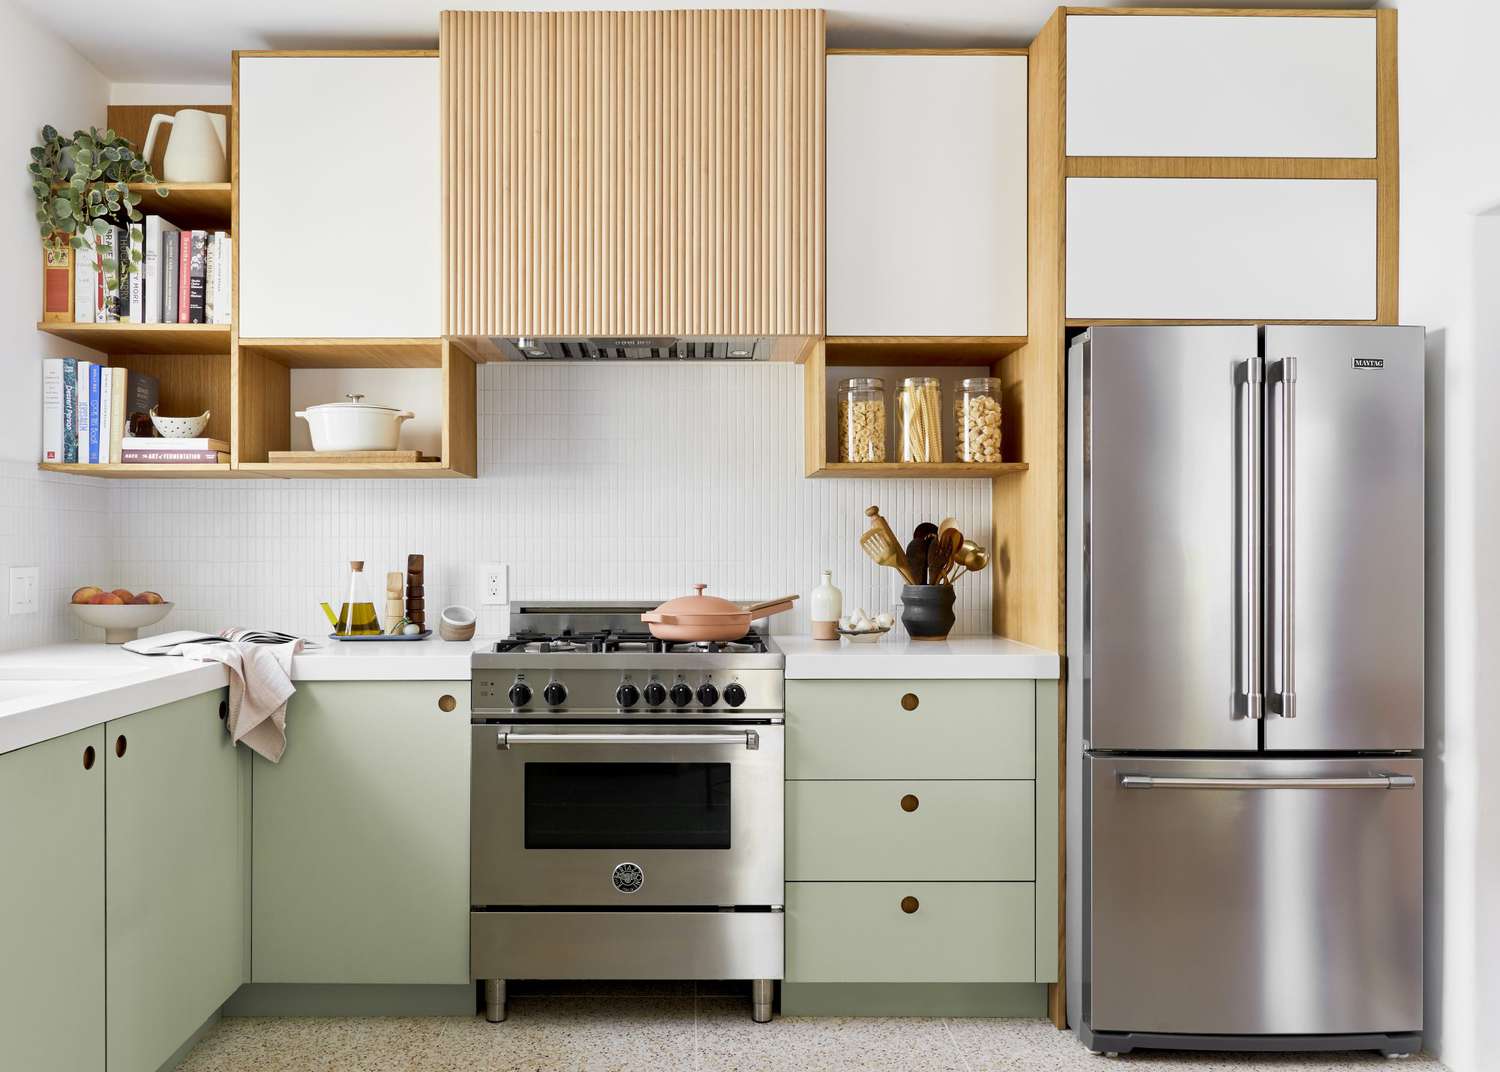 Кухня чистого дизайна со светло-зелеными нижними шкафами и тамбурной вытяжкой